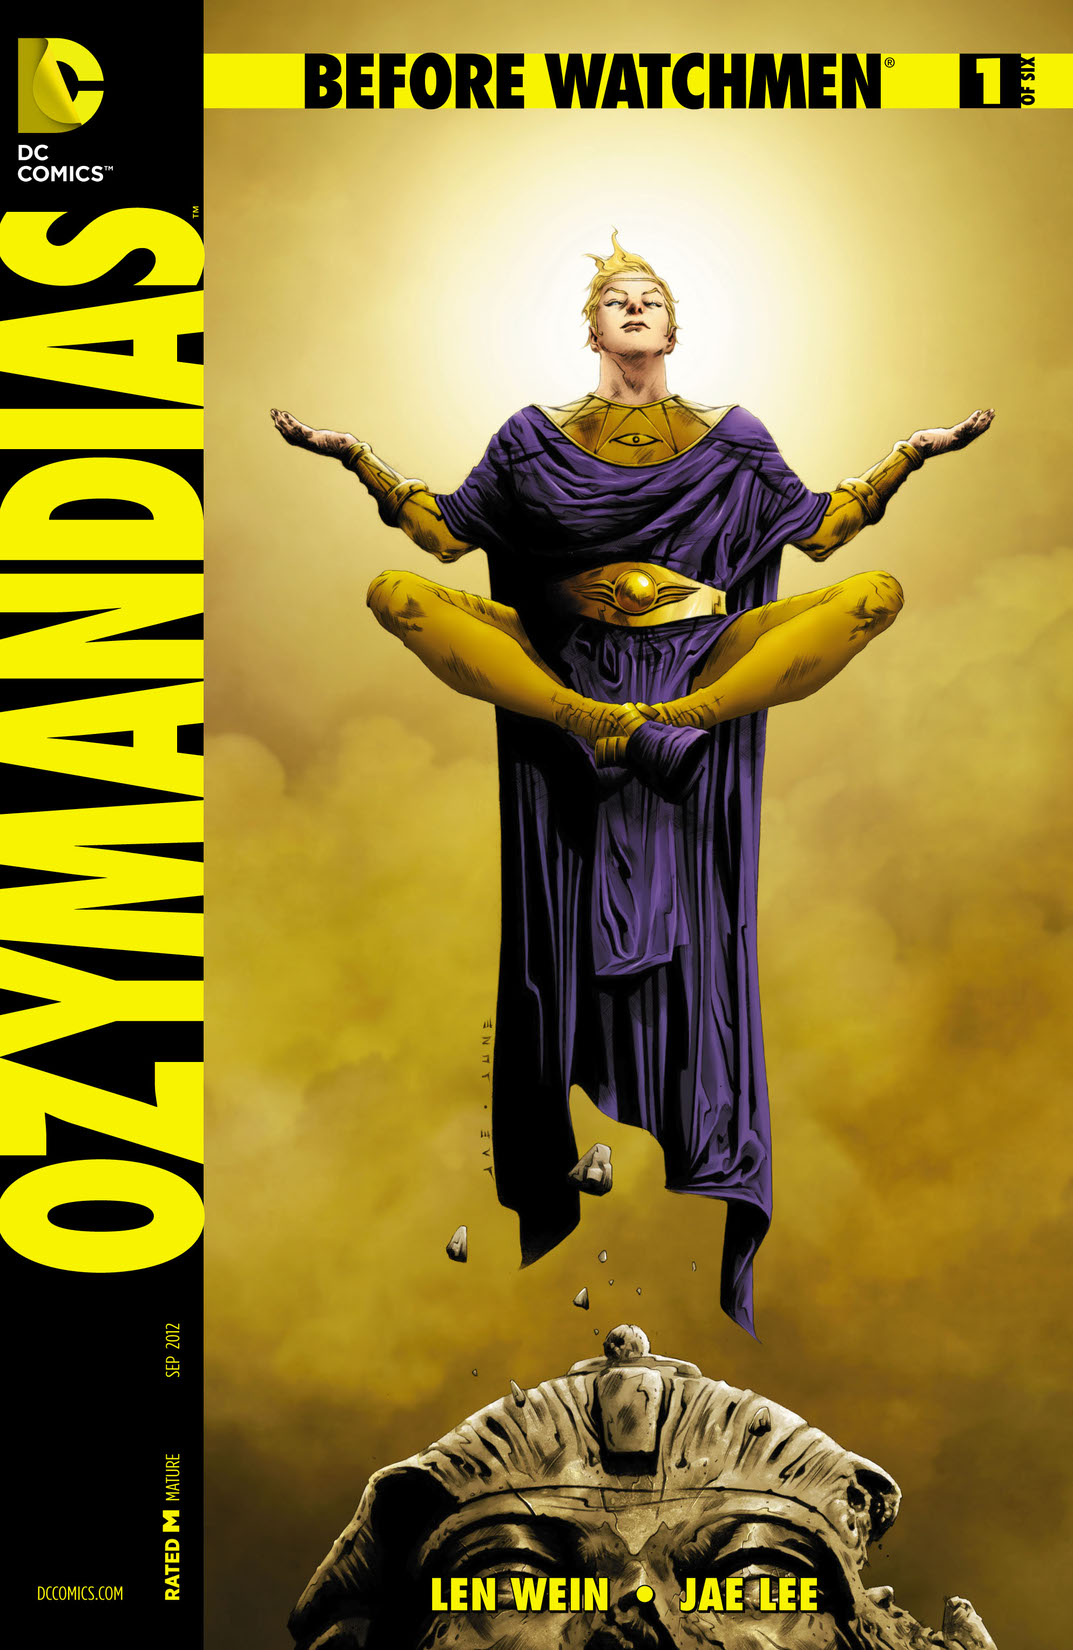 Before Watchmen: Ozymandias #1 preview images